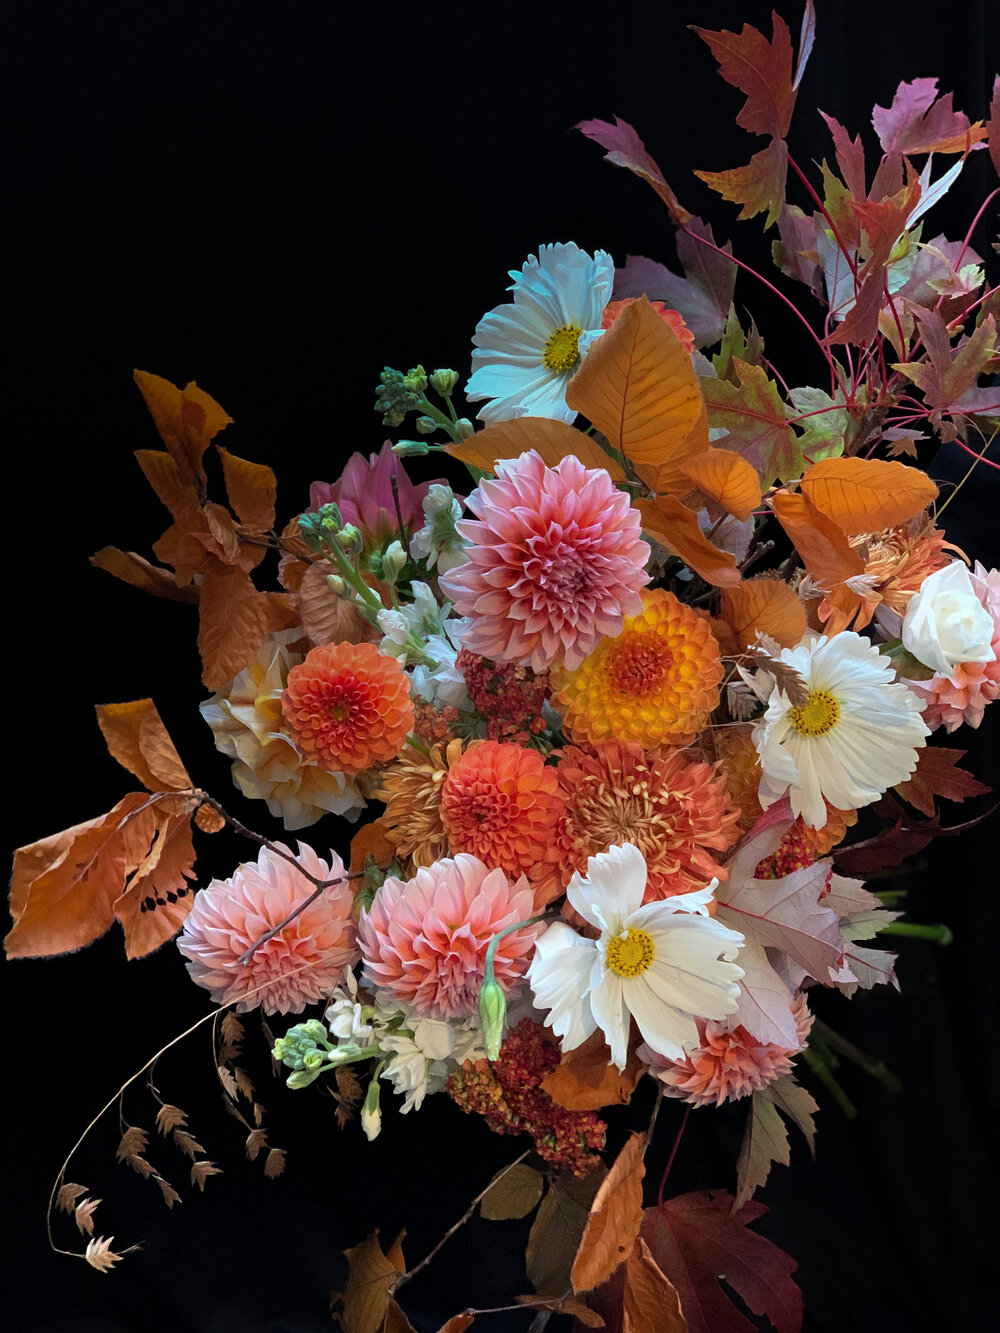 Flower Arrangements, Floral Arrangements Delivery